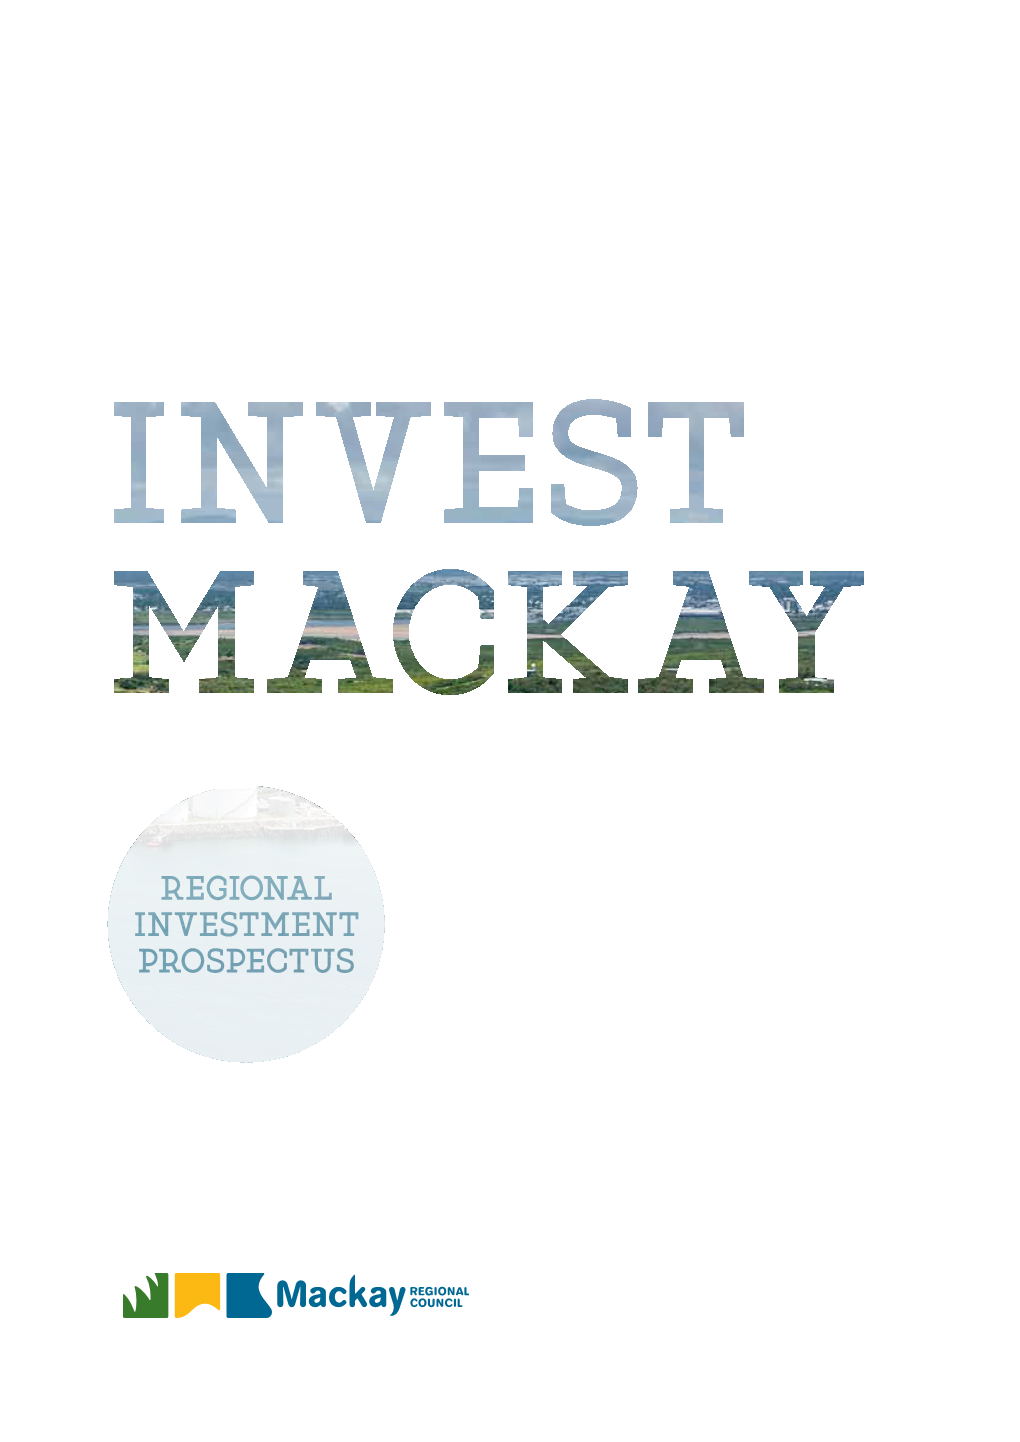 Regional Investment Prospectus (PDF 5MB)